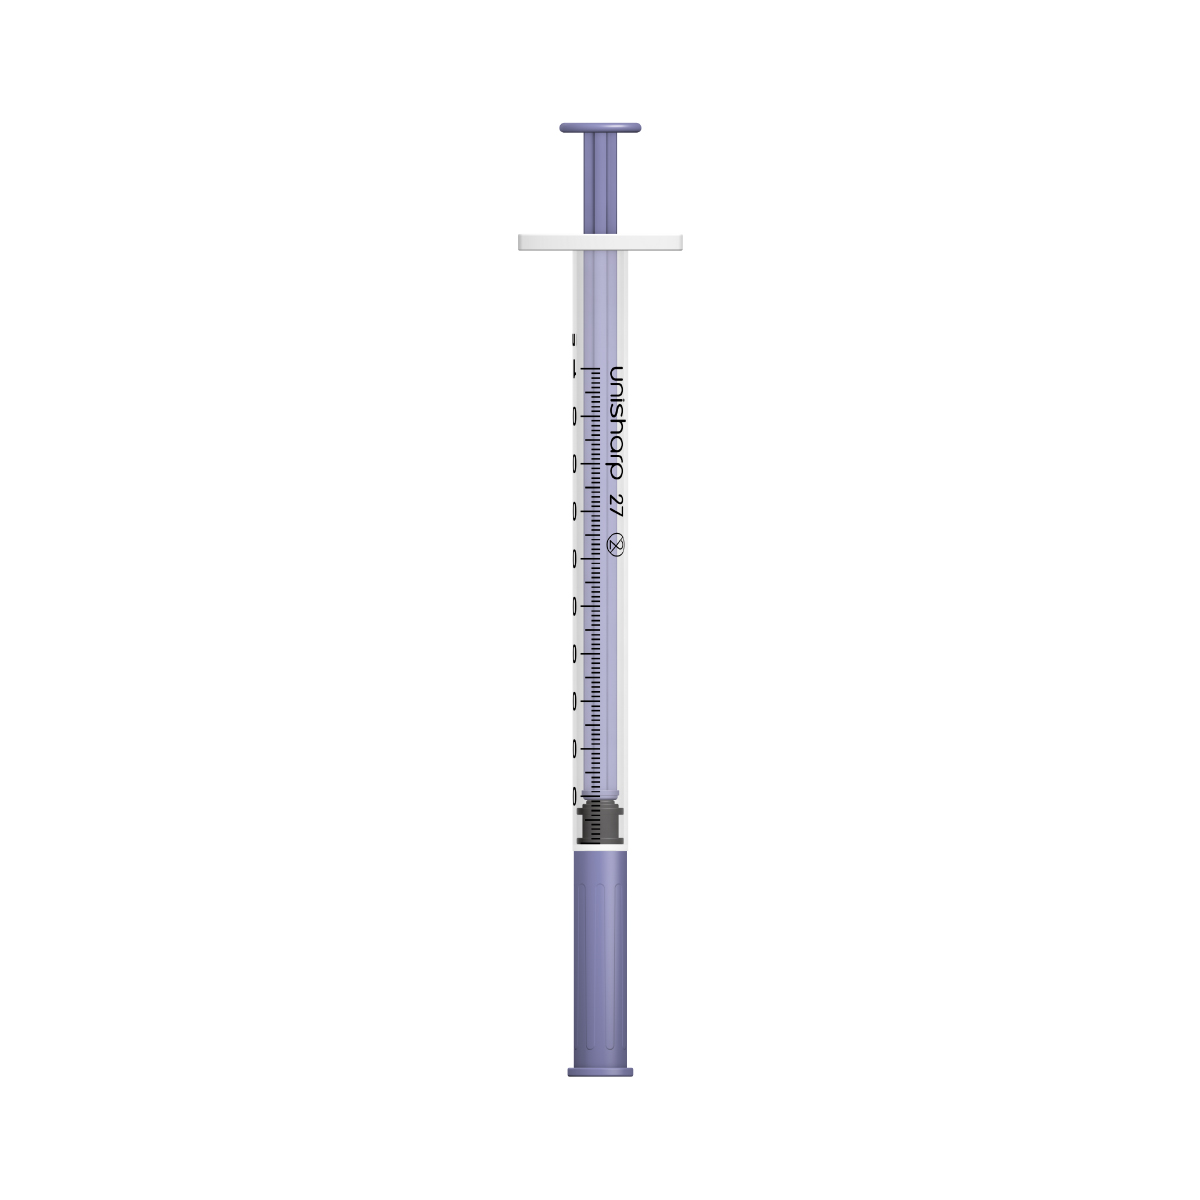 Unisharp 1ml 27G fixed needle syringe: Violet